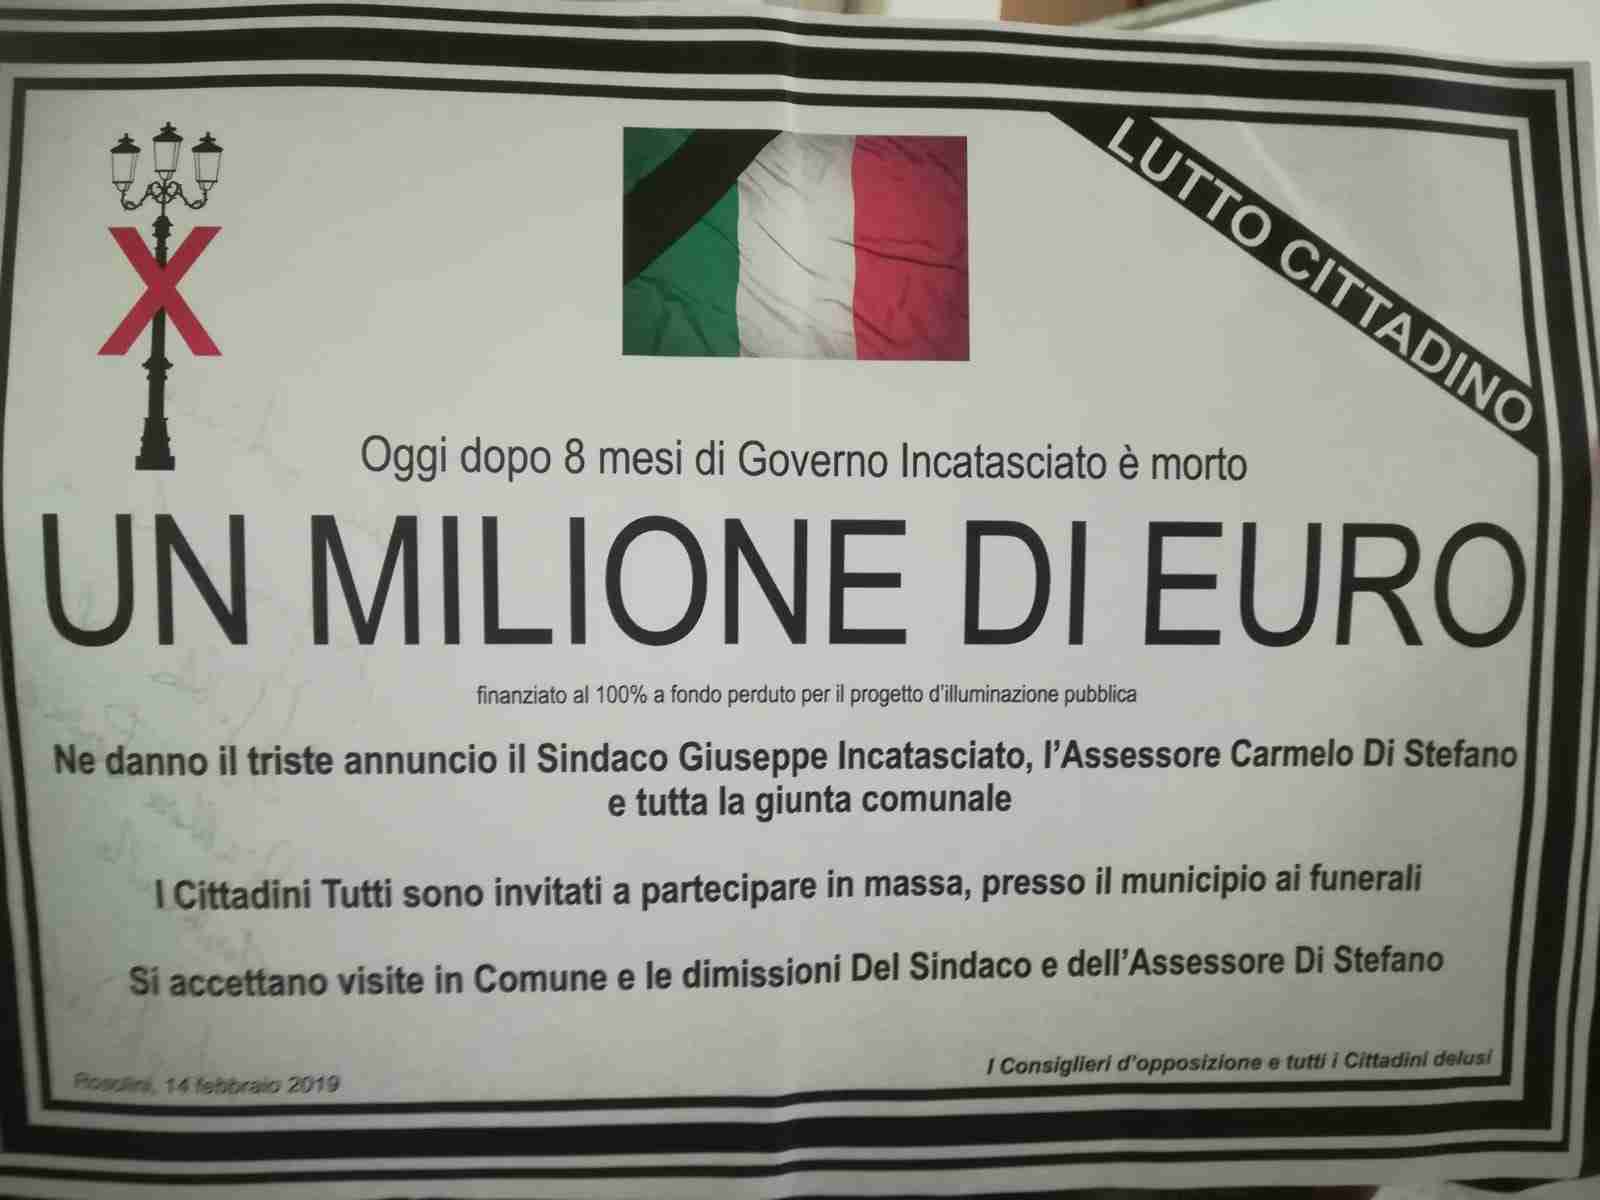 “E’ morto un milione di euro”, manifesto a lutto per la perdita del finanziamento